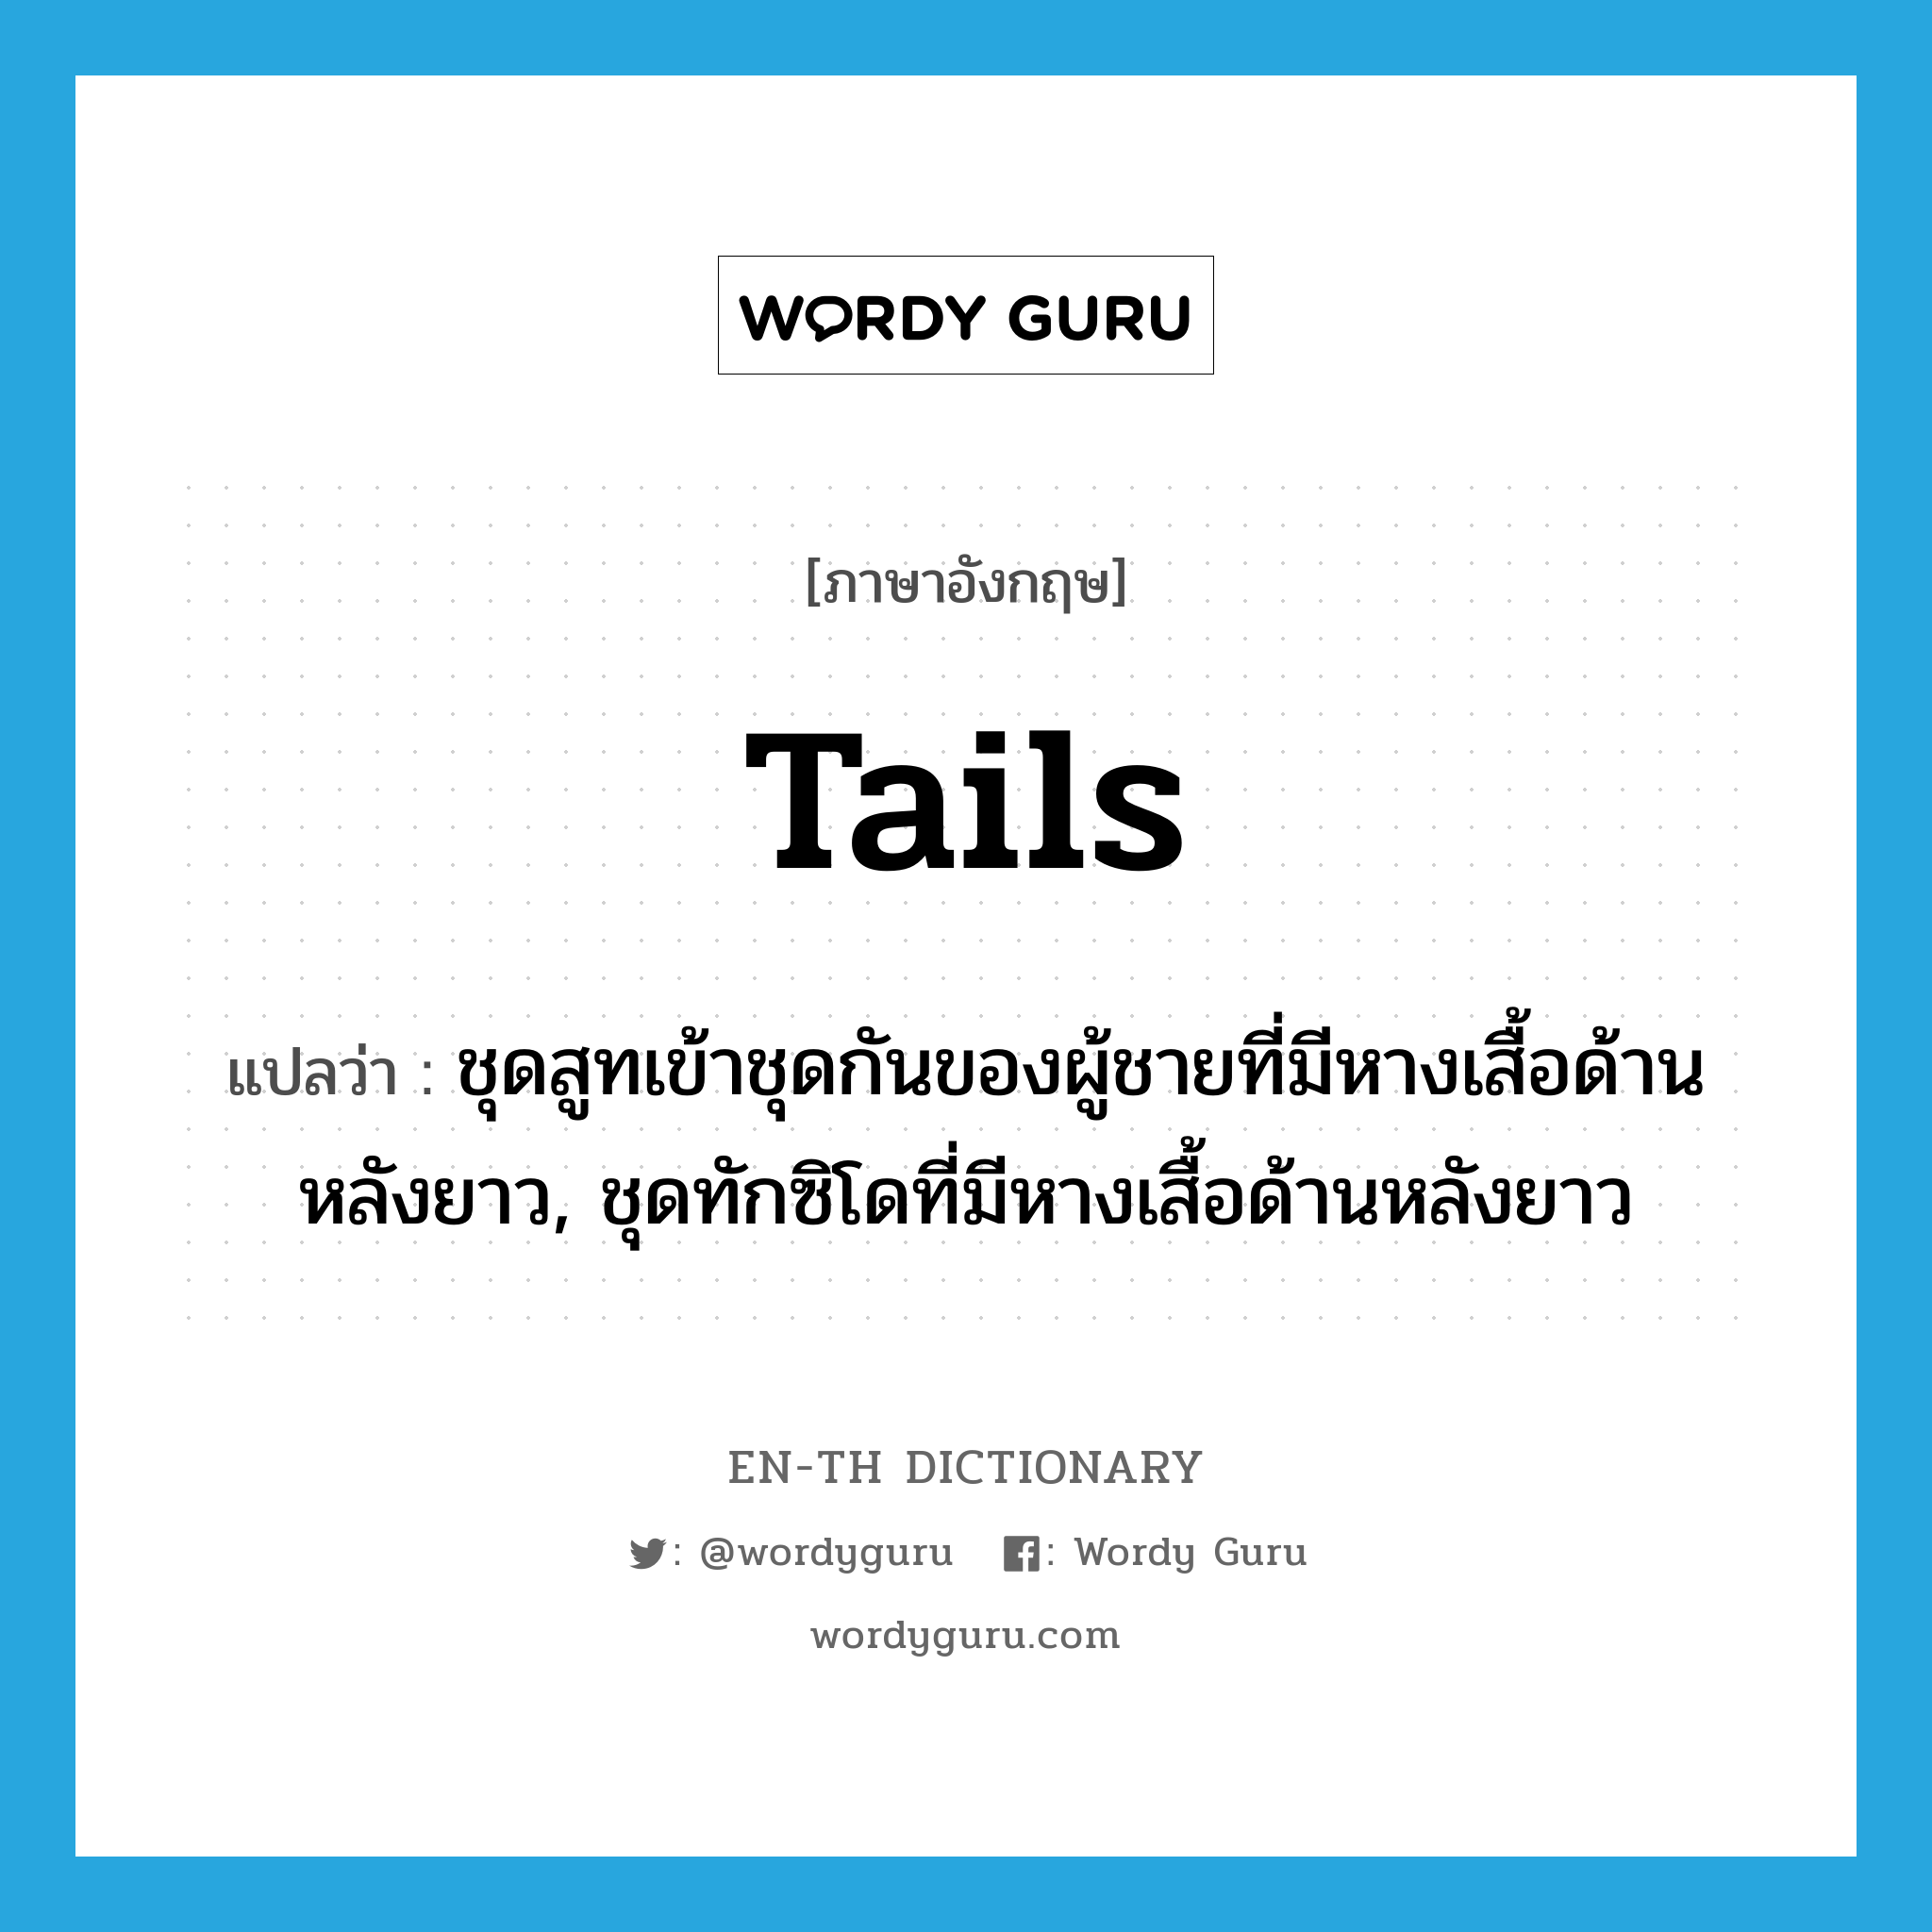 tails แปลว่า?, คำศัพท์ภาษาอังกฤษ tails แปลว่า ชุดสูทเข้าชุดกันของผู้ชายที่มีหางเสื้อด้านหลังยาว, ชุดทักซิโดที่มีหางเสื้อด้านหลังยาว ประเภท SL หมวด SL